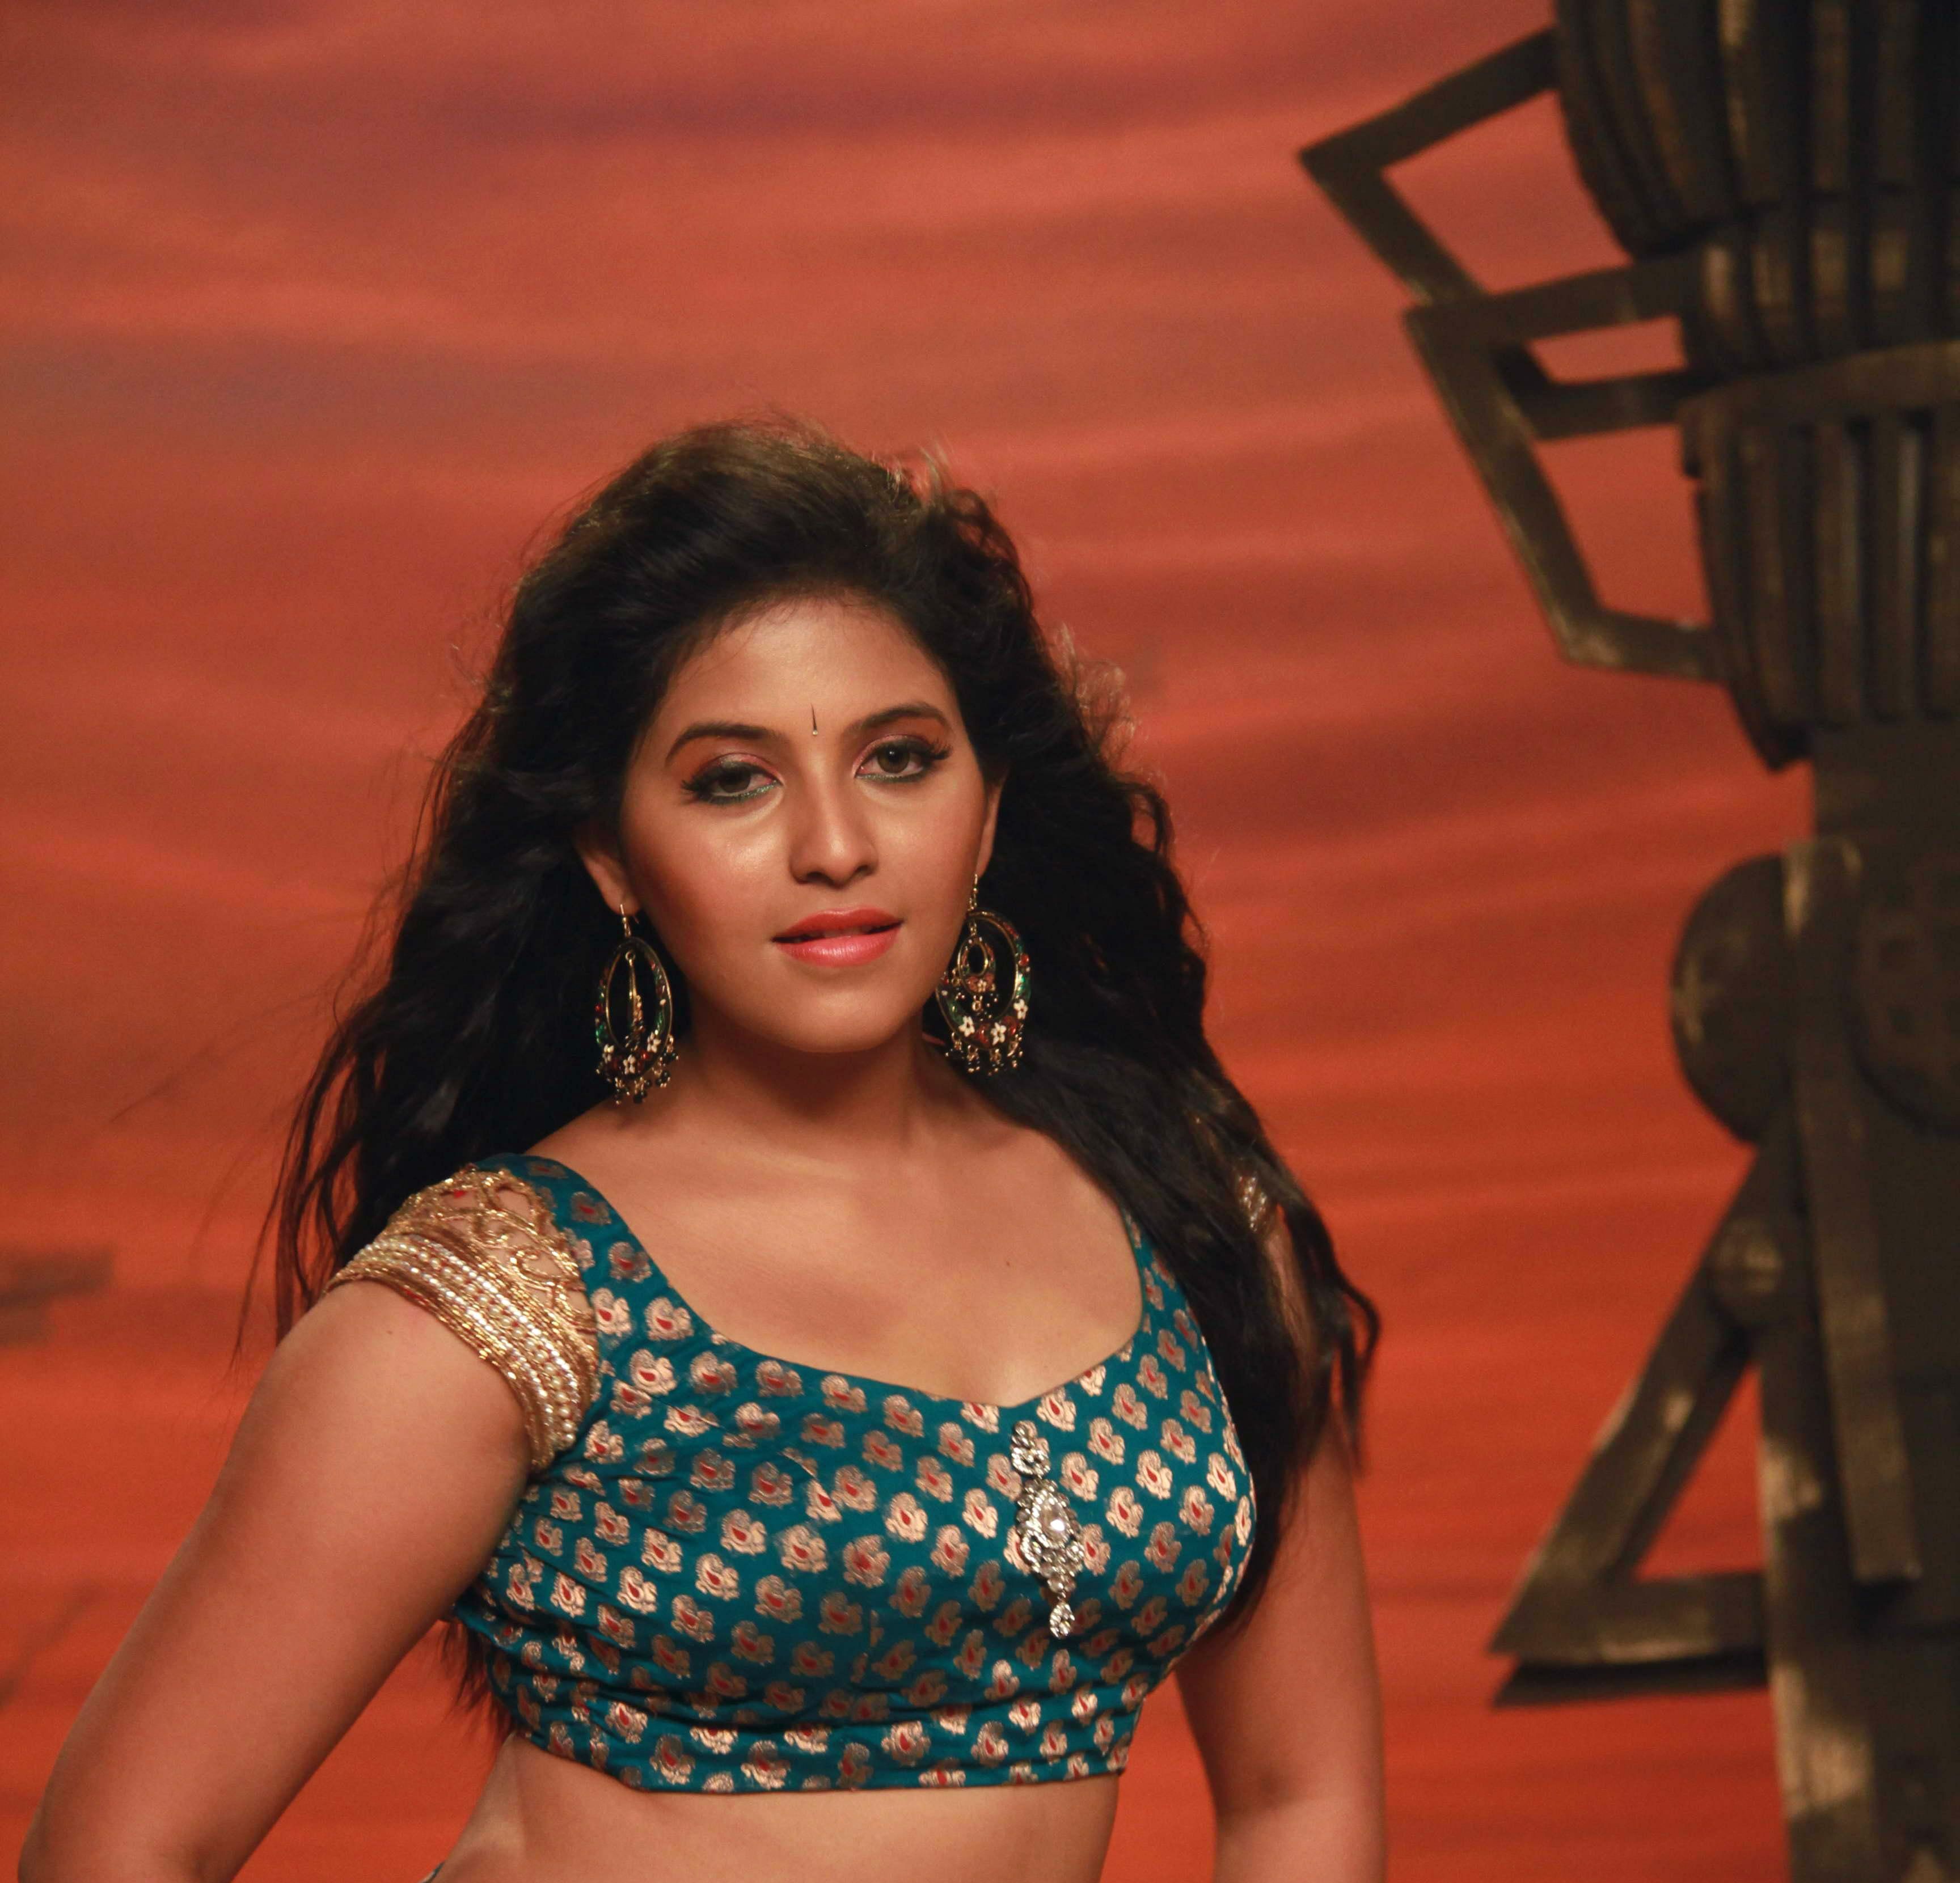 Actress K #Tamil #Telugu #Anjali K #wallpaper #hdwallpaper #desktop. Actresses, Bollywood actress hot photo, Indian actress hot pics